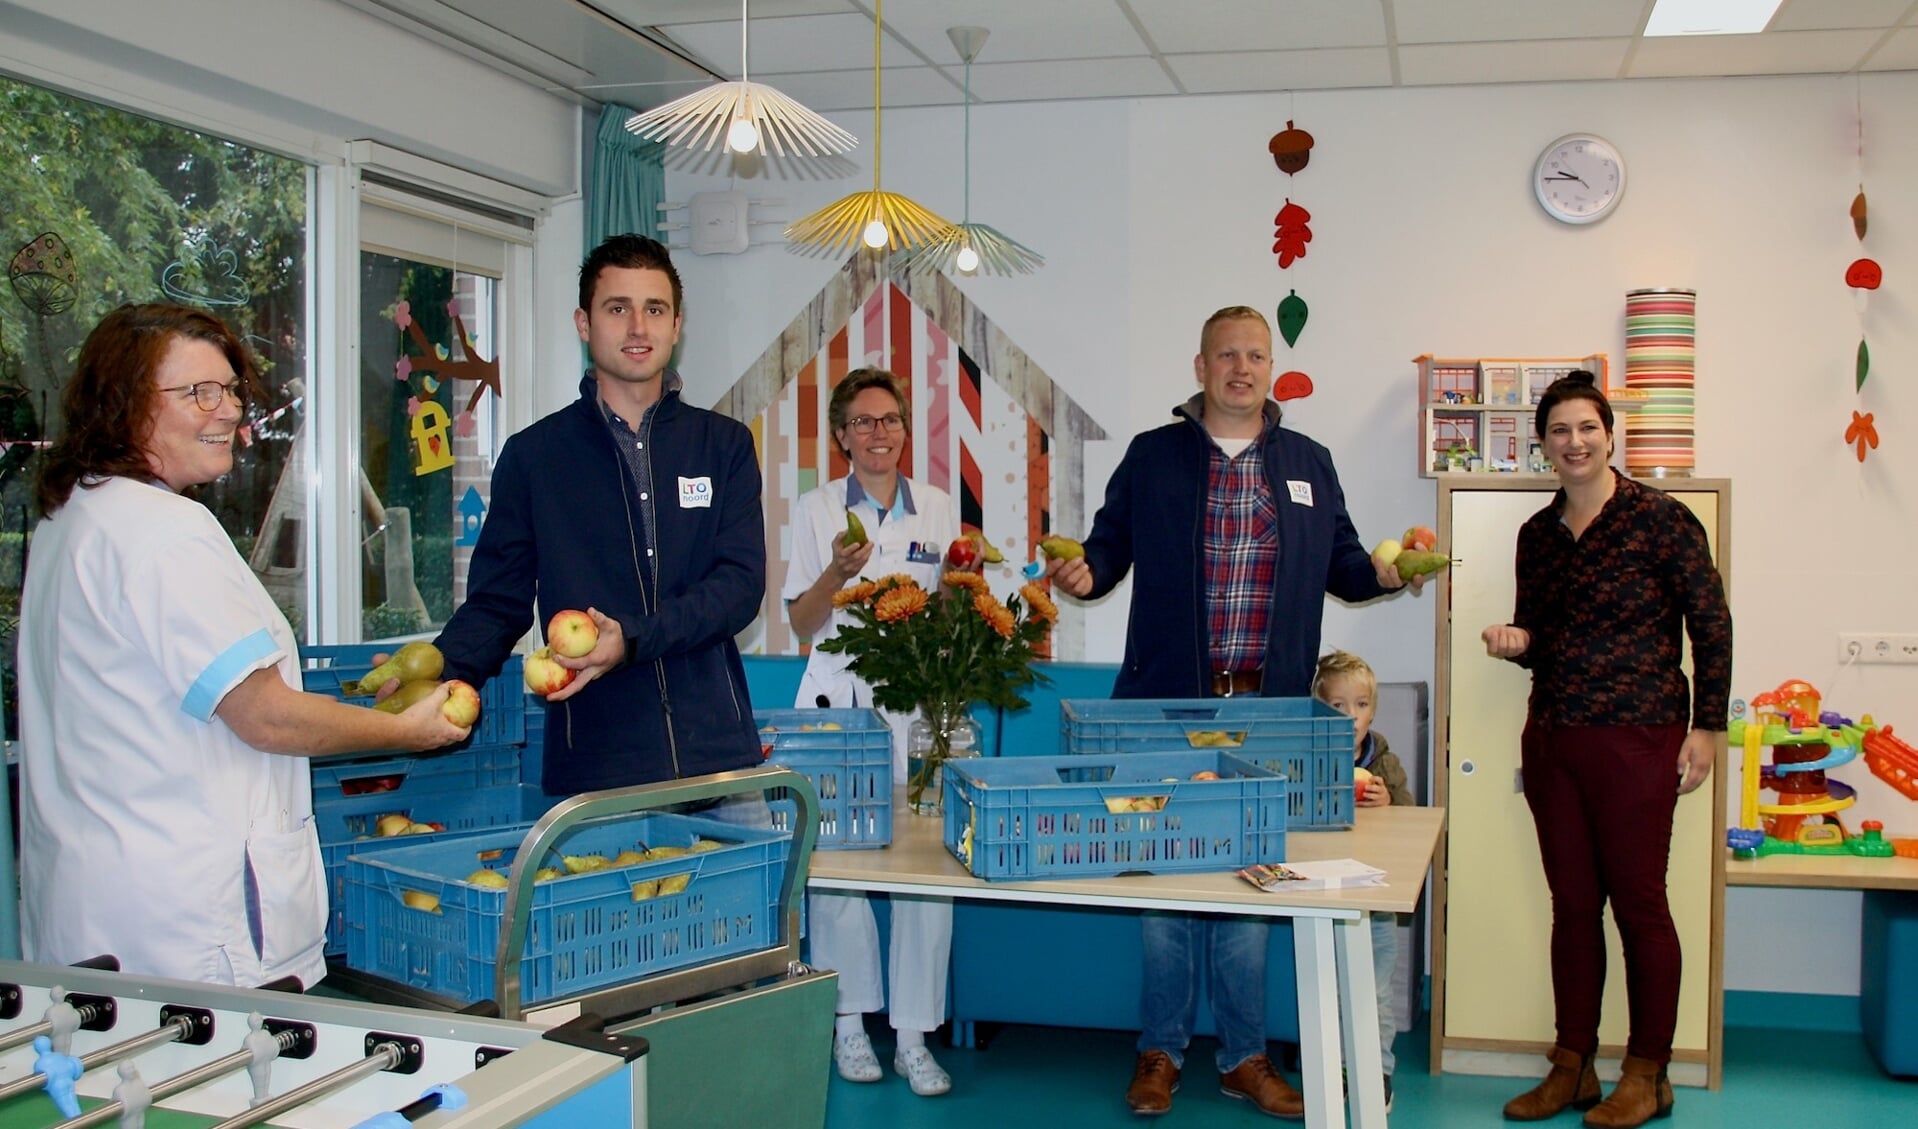 Niels van Nederpelt en Pieter van Kempen van LTO Noord, afdeling Goeree-Overflakkee overhandigen het fruit aan het ziekenhuispersoneel. De dame in het midden is zorgcoördinator Karin van Tigchelen (Foto: Klazina de Bakker).